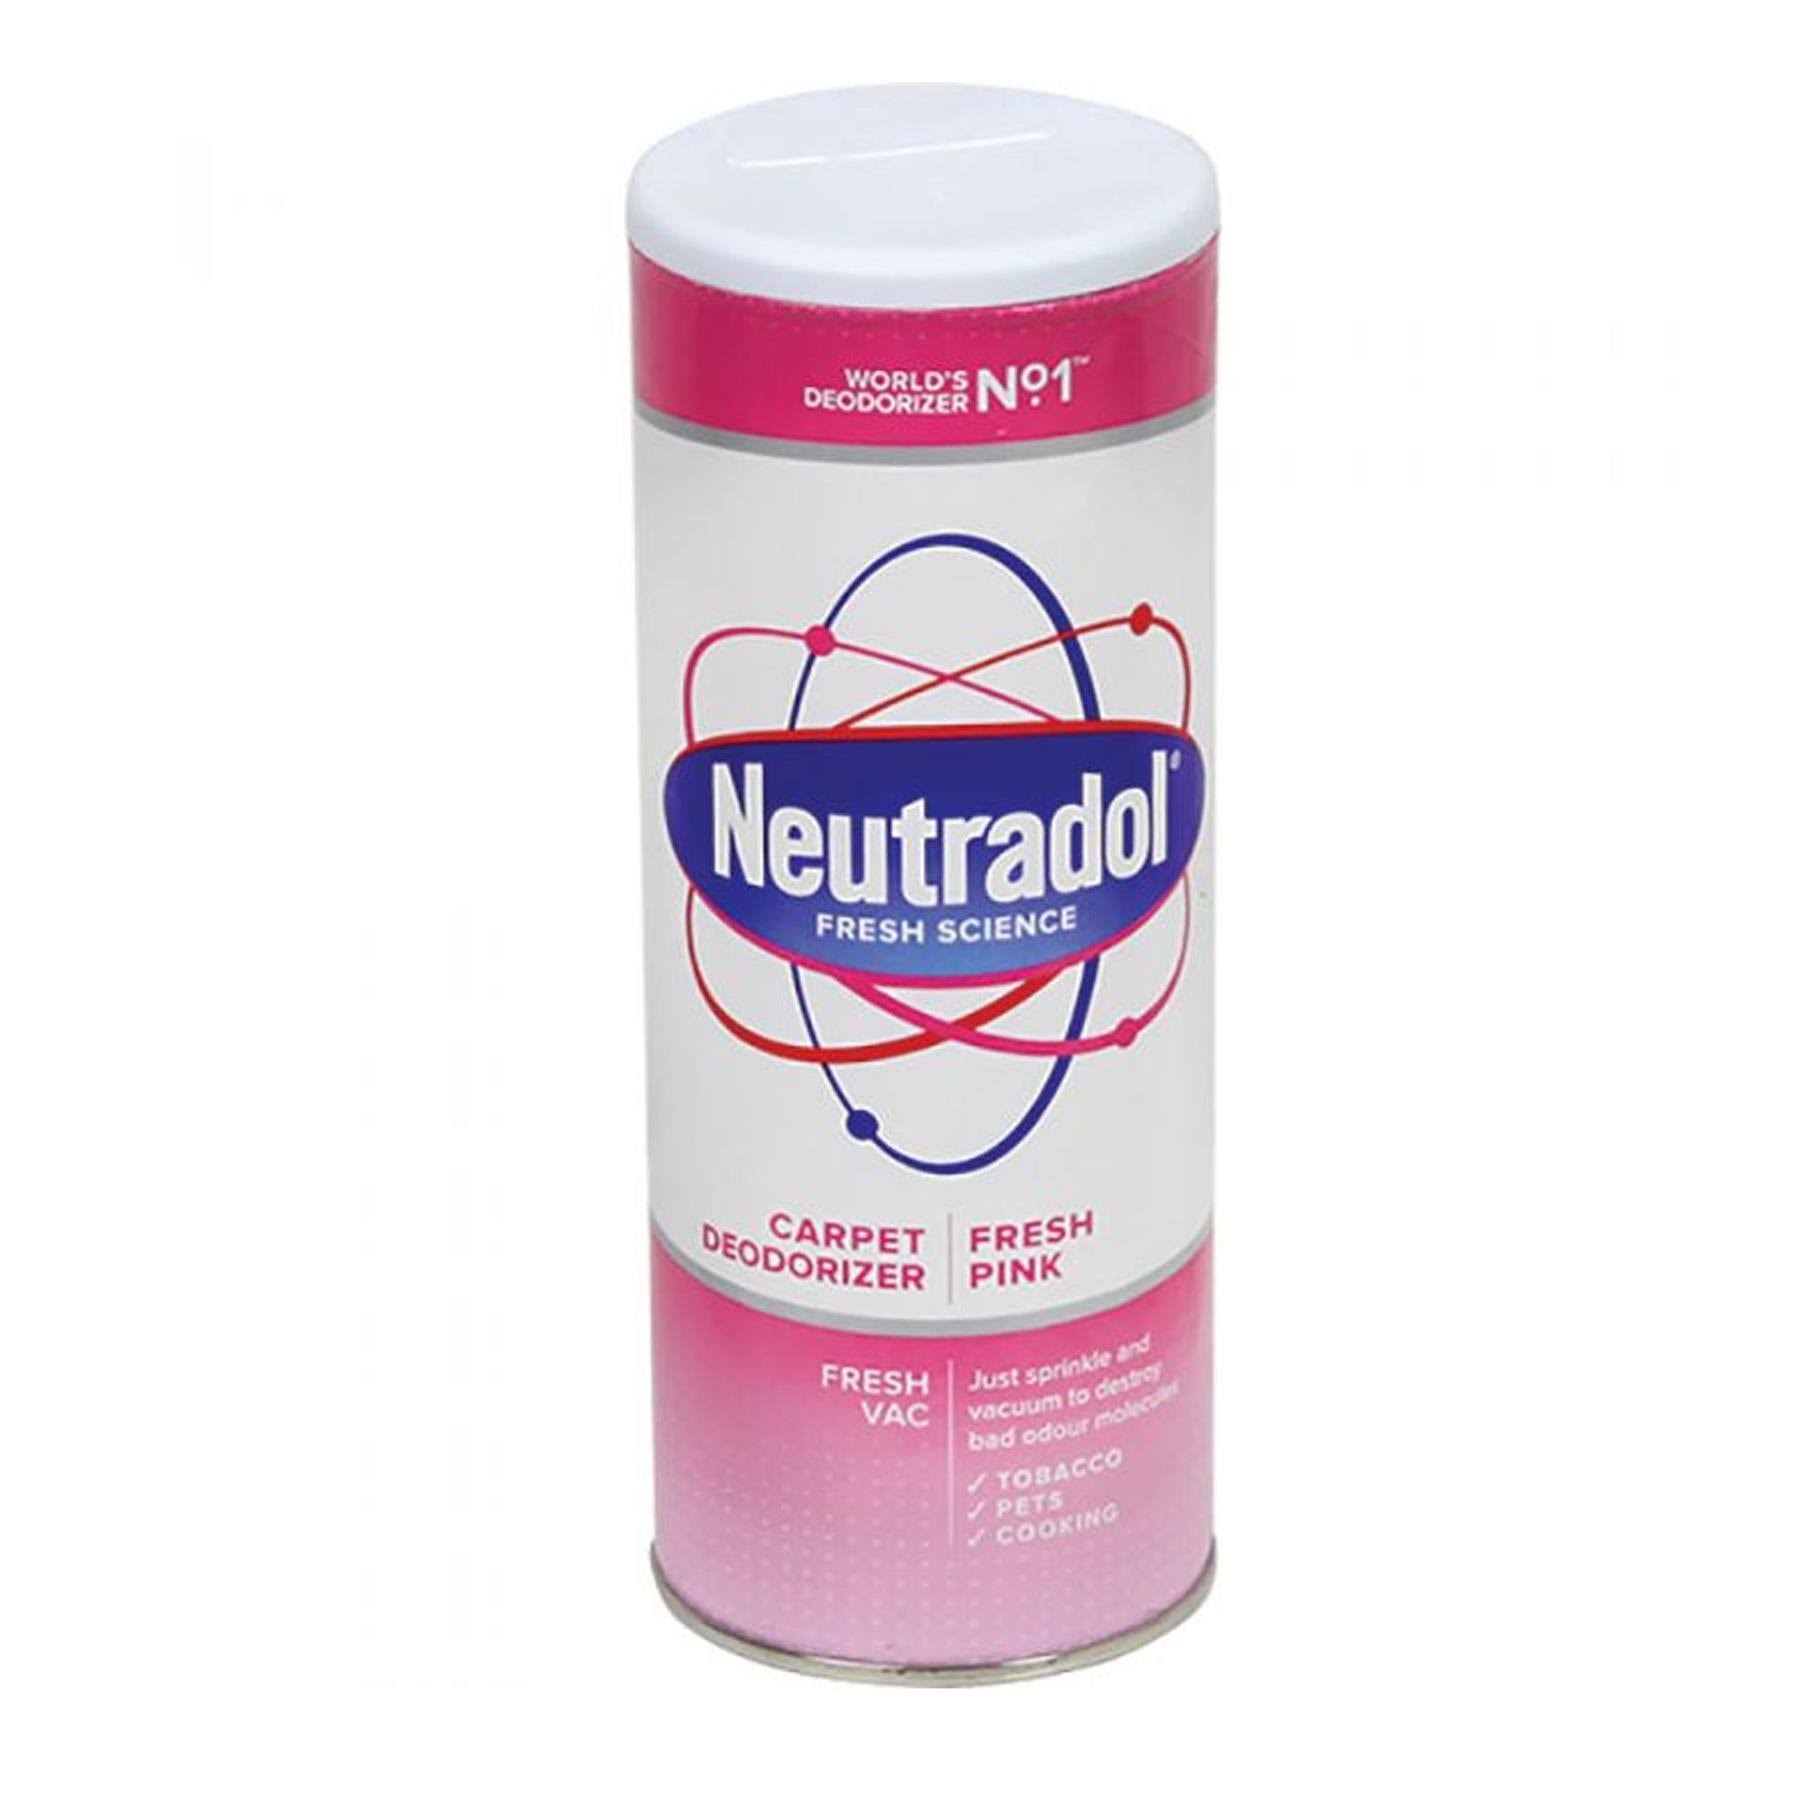 Neutradol Carpet Deodorizer - Fresh Pink, 350g